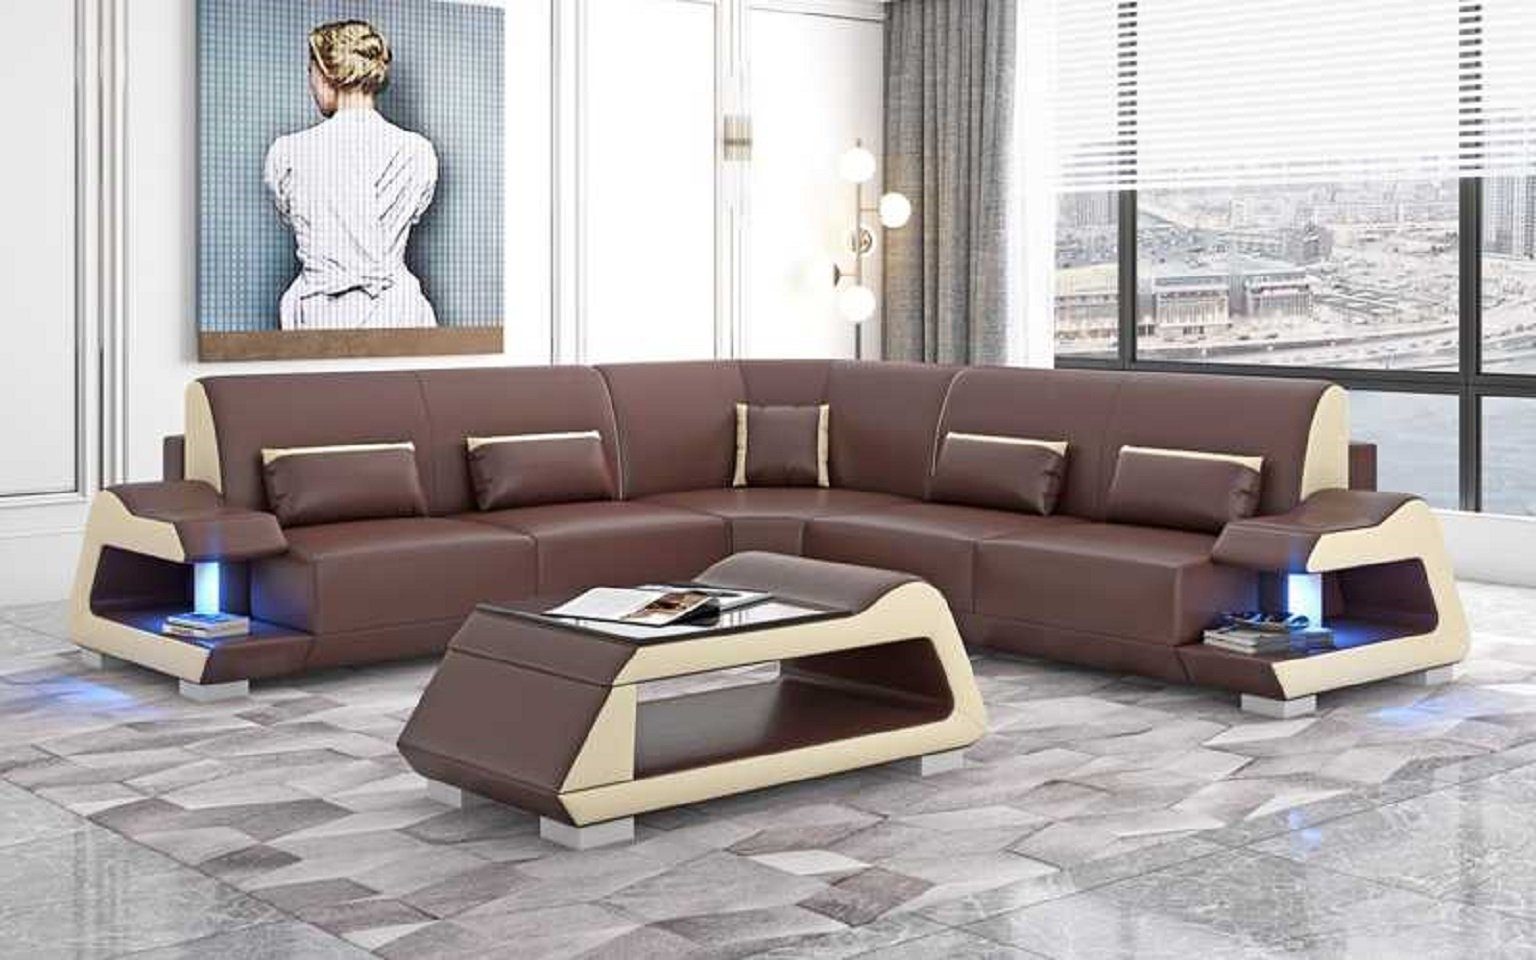 in Sofa Ecksofa 3 Sofas, JVmoebel Eckgarnitur Europe Form Made Braun Wohnzimmer Ecksofa L Luxus Teile,